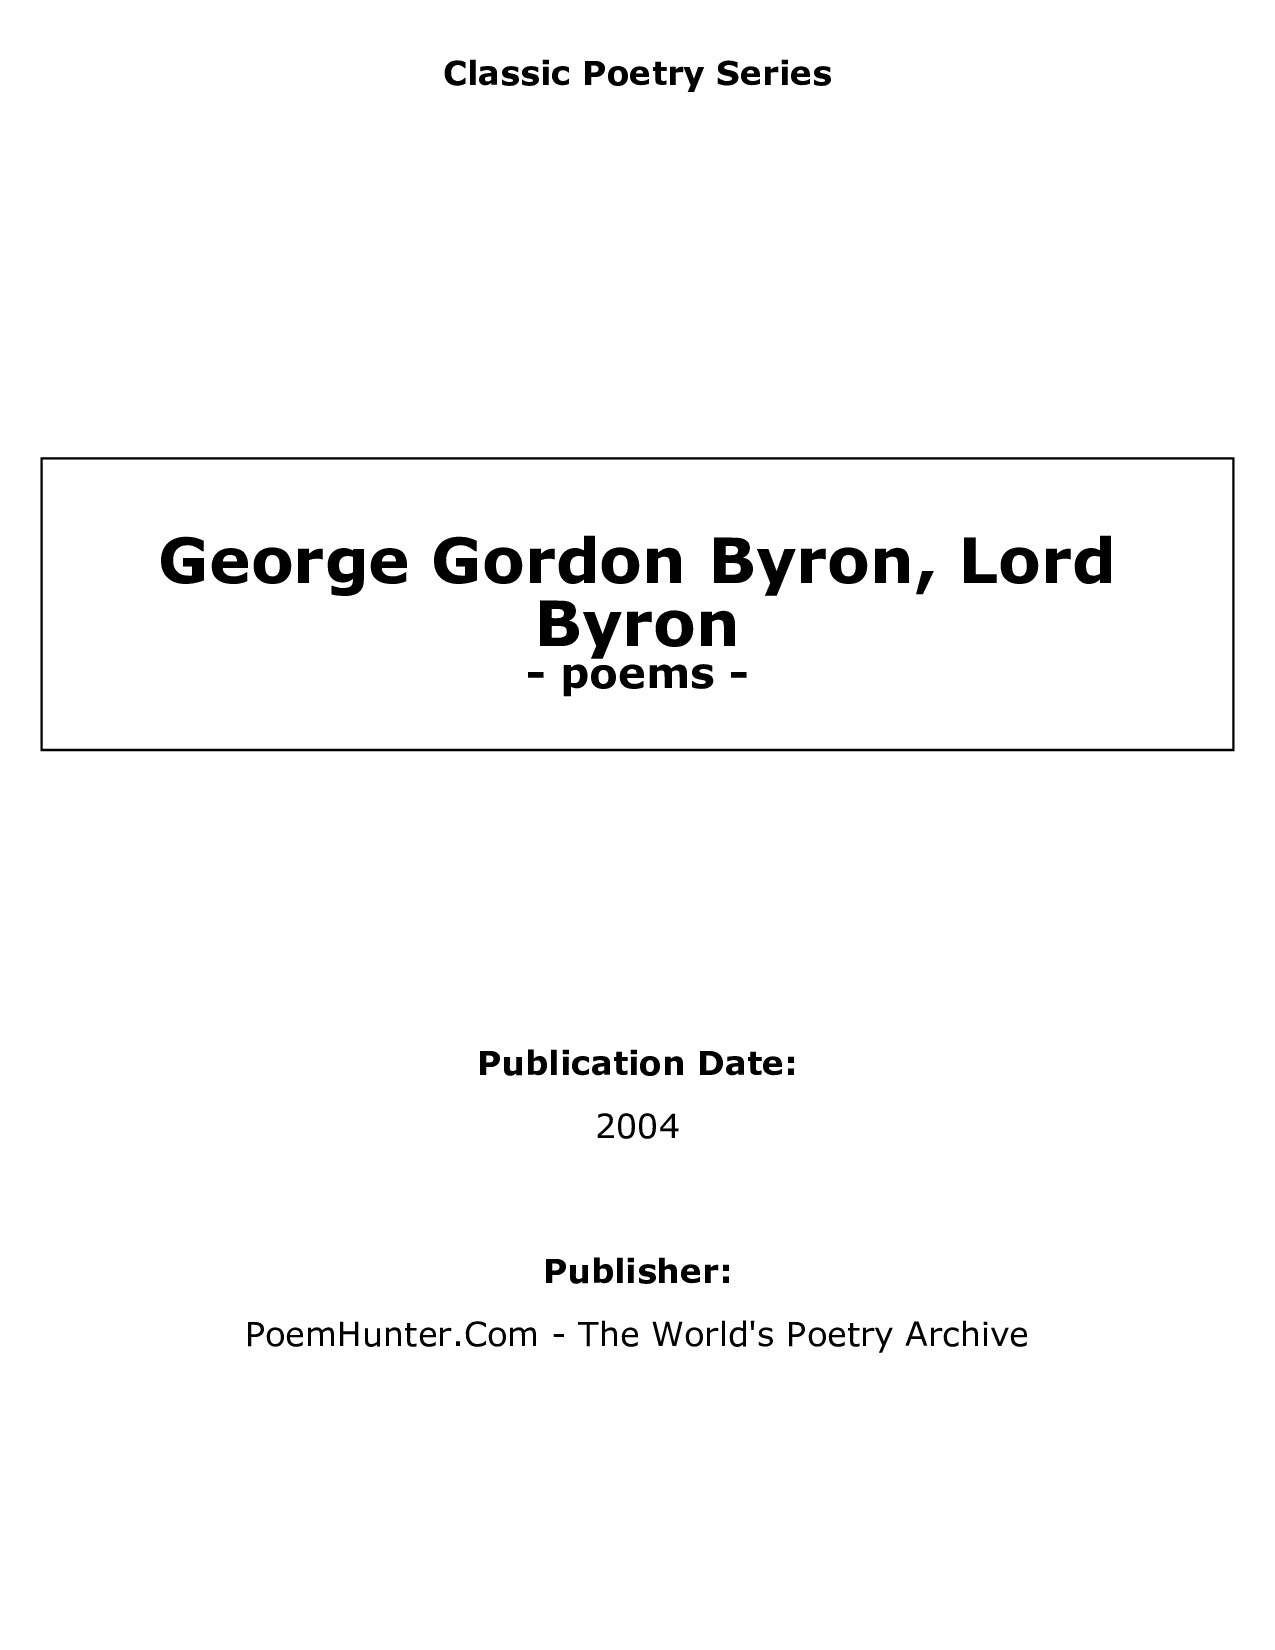 George Gordon Byron, Lord Byron - poems - 